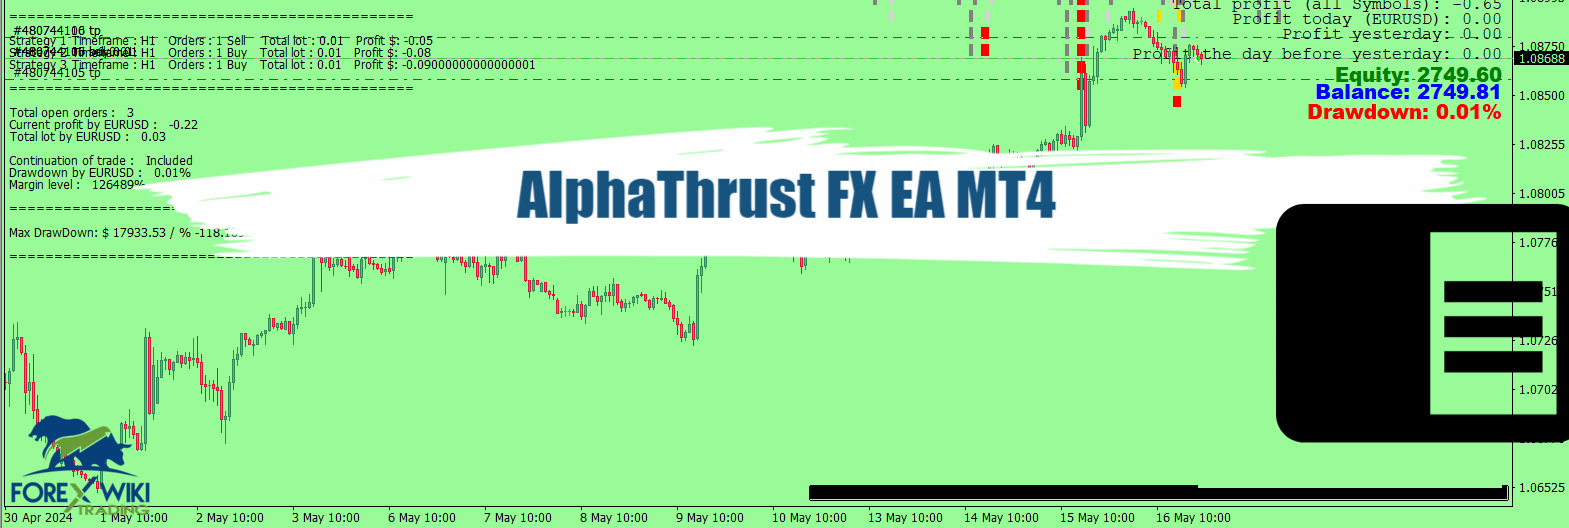 AlphaThrust FX EA MT4 - Free Download 8